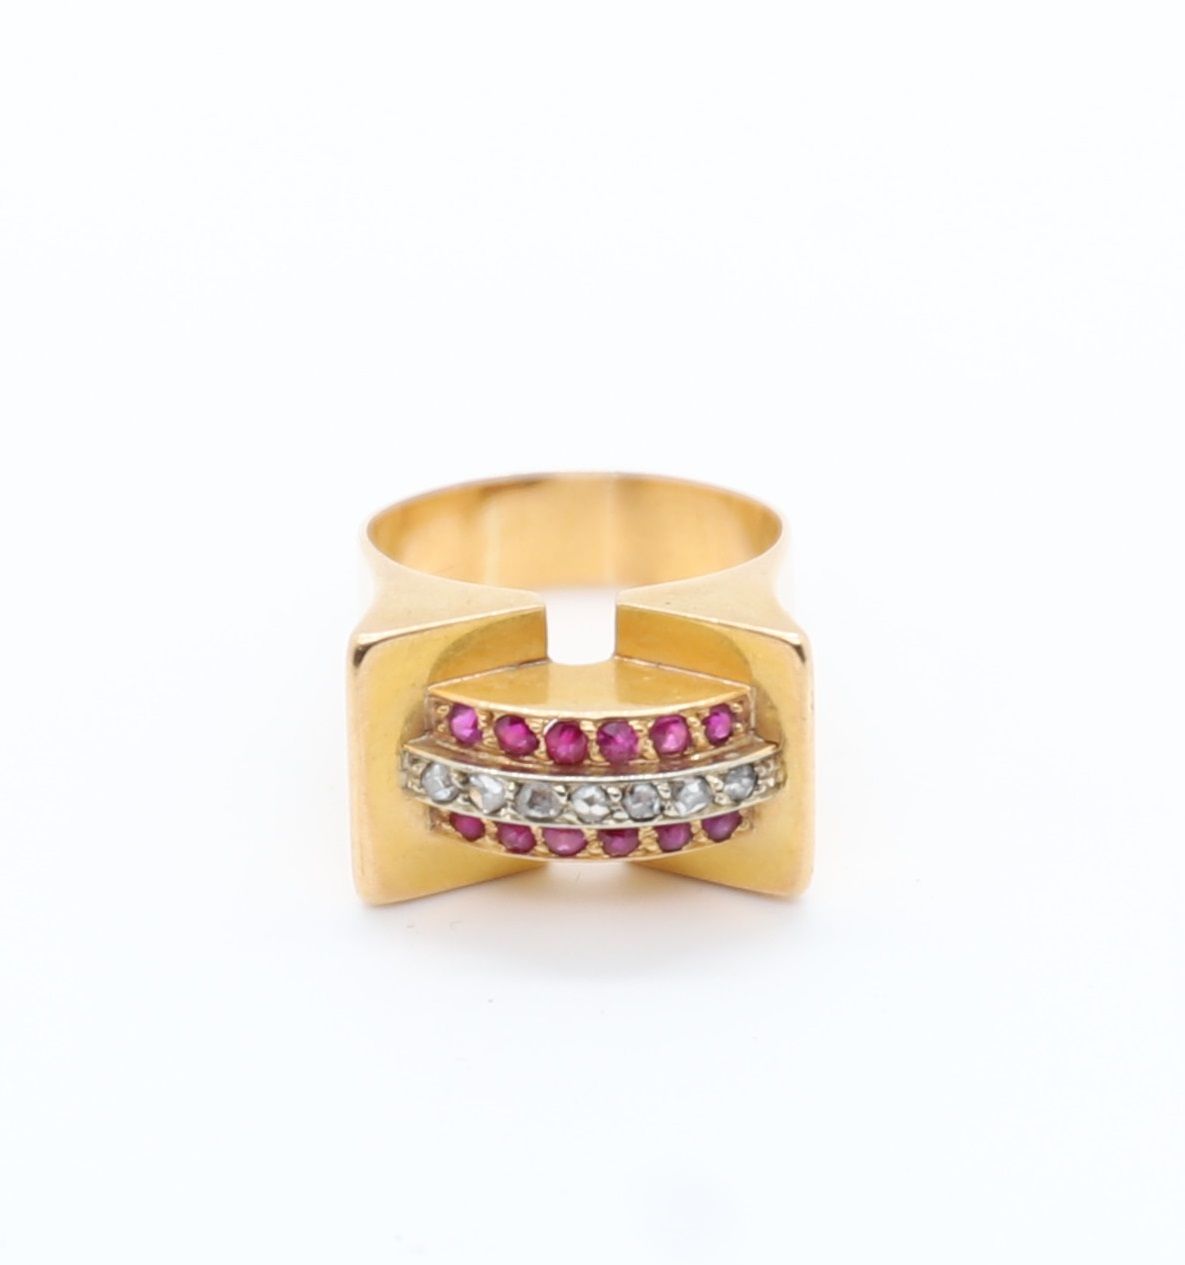 Null 装饰艺术风格的黄金戒指，镶有三排宝石
一行7颗迷你钻石，两行各6颗迷你红宝石。
Tdd : 50
Pb : 6,6 grs